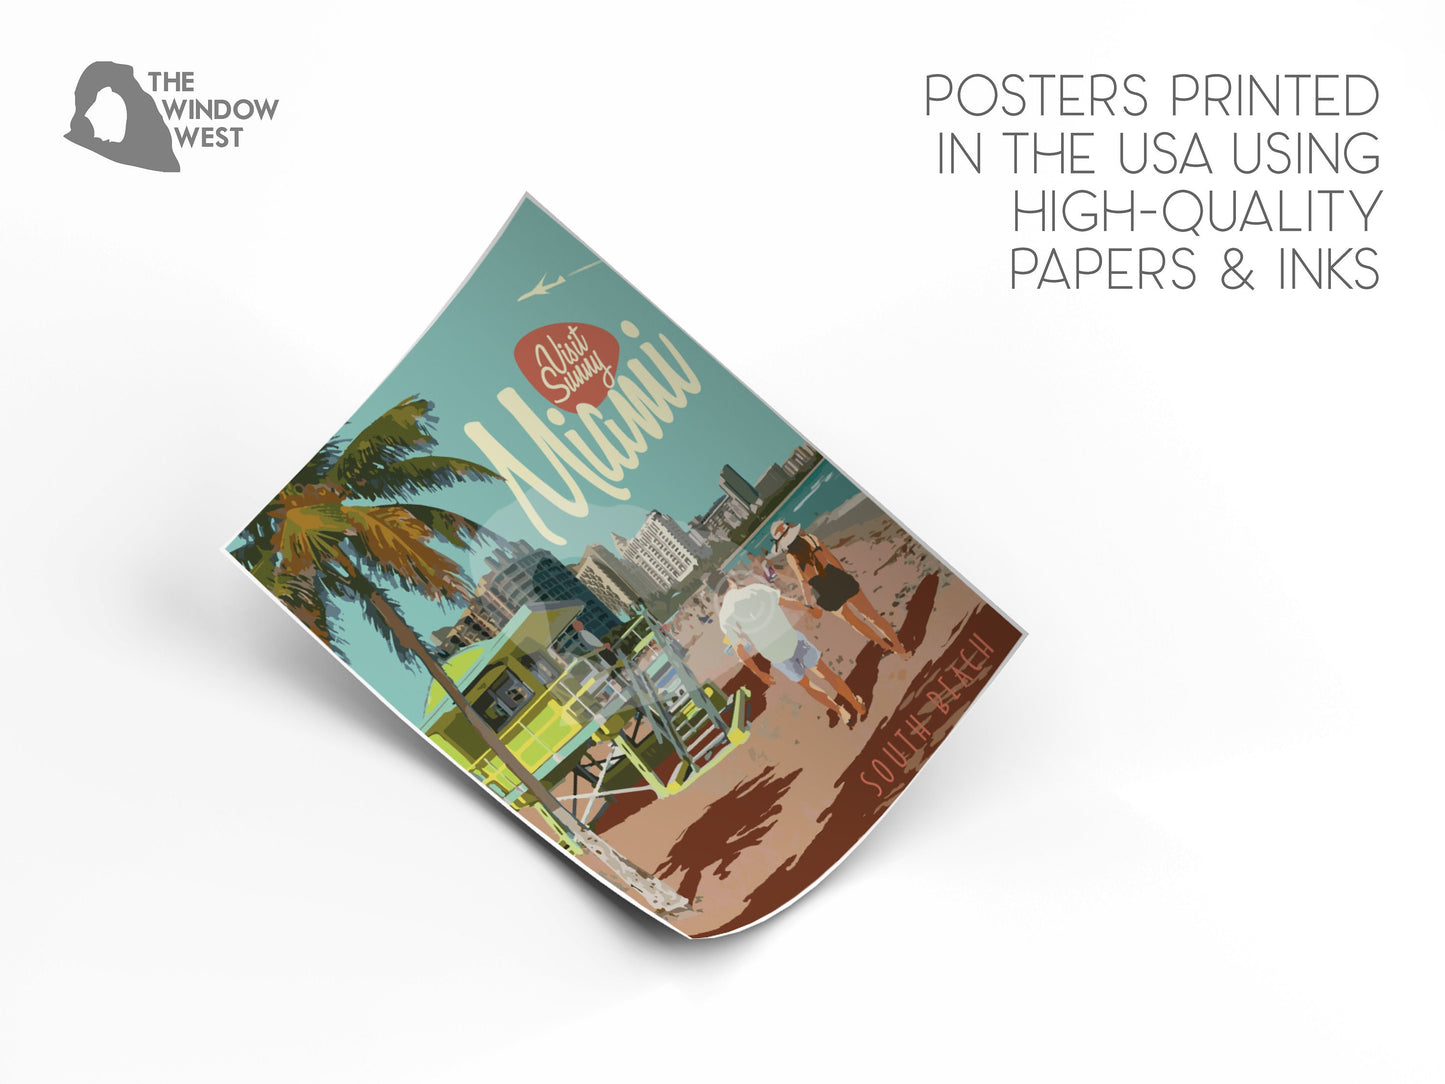 Miami Florida Print, Miami South Beach Poster, Florida Vintage Style Travel Art